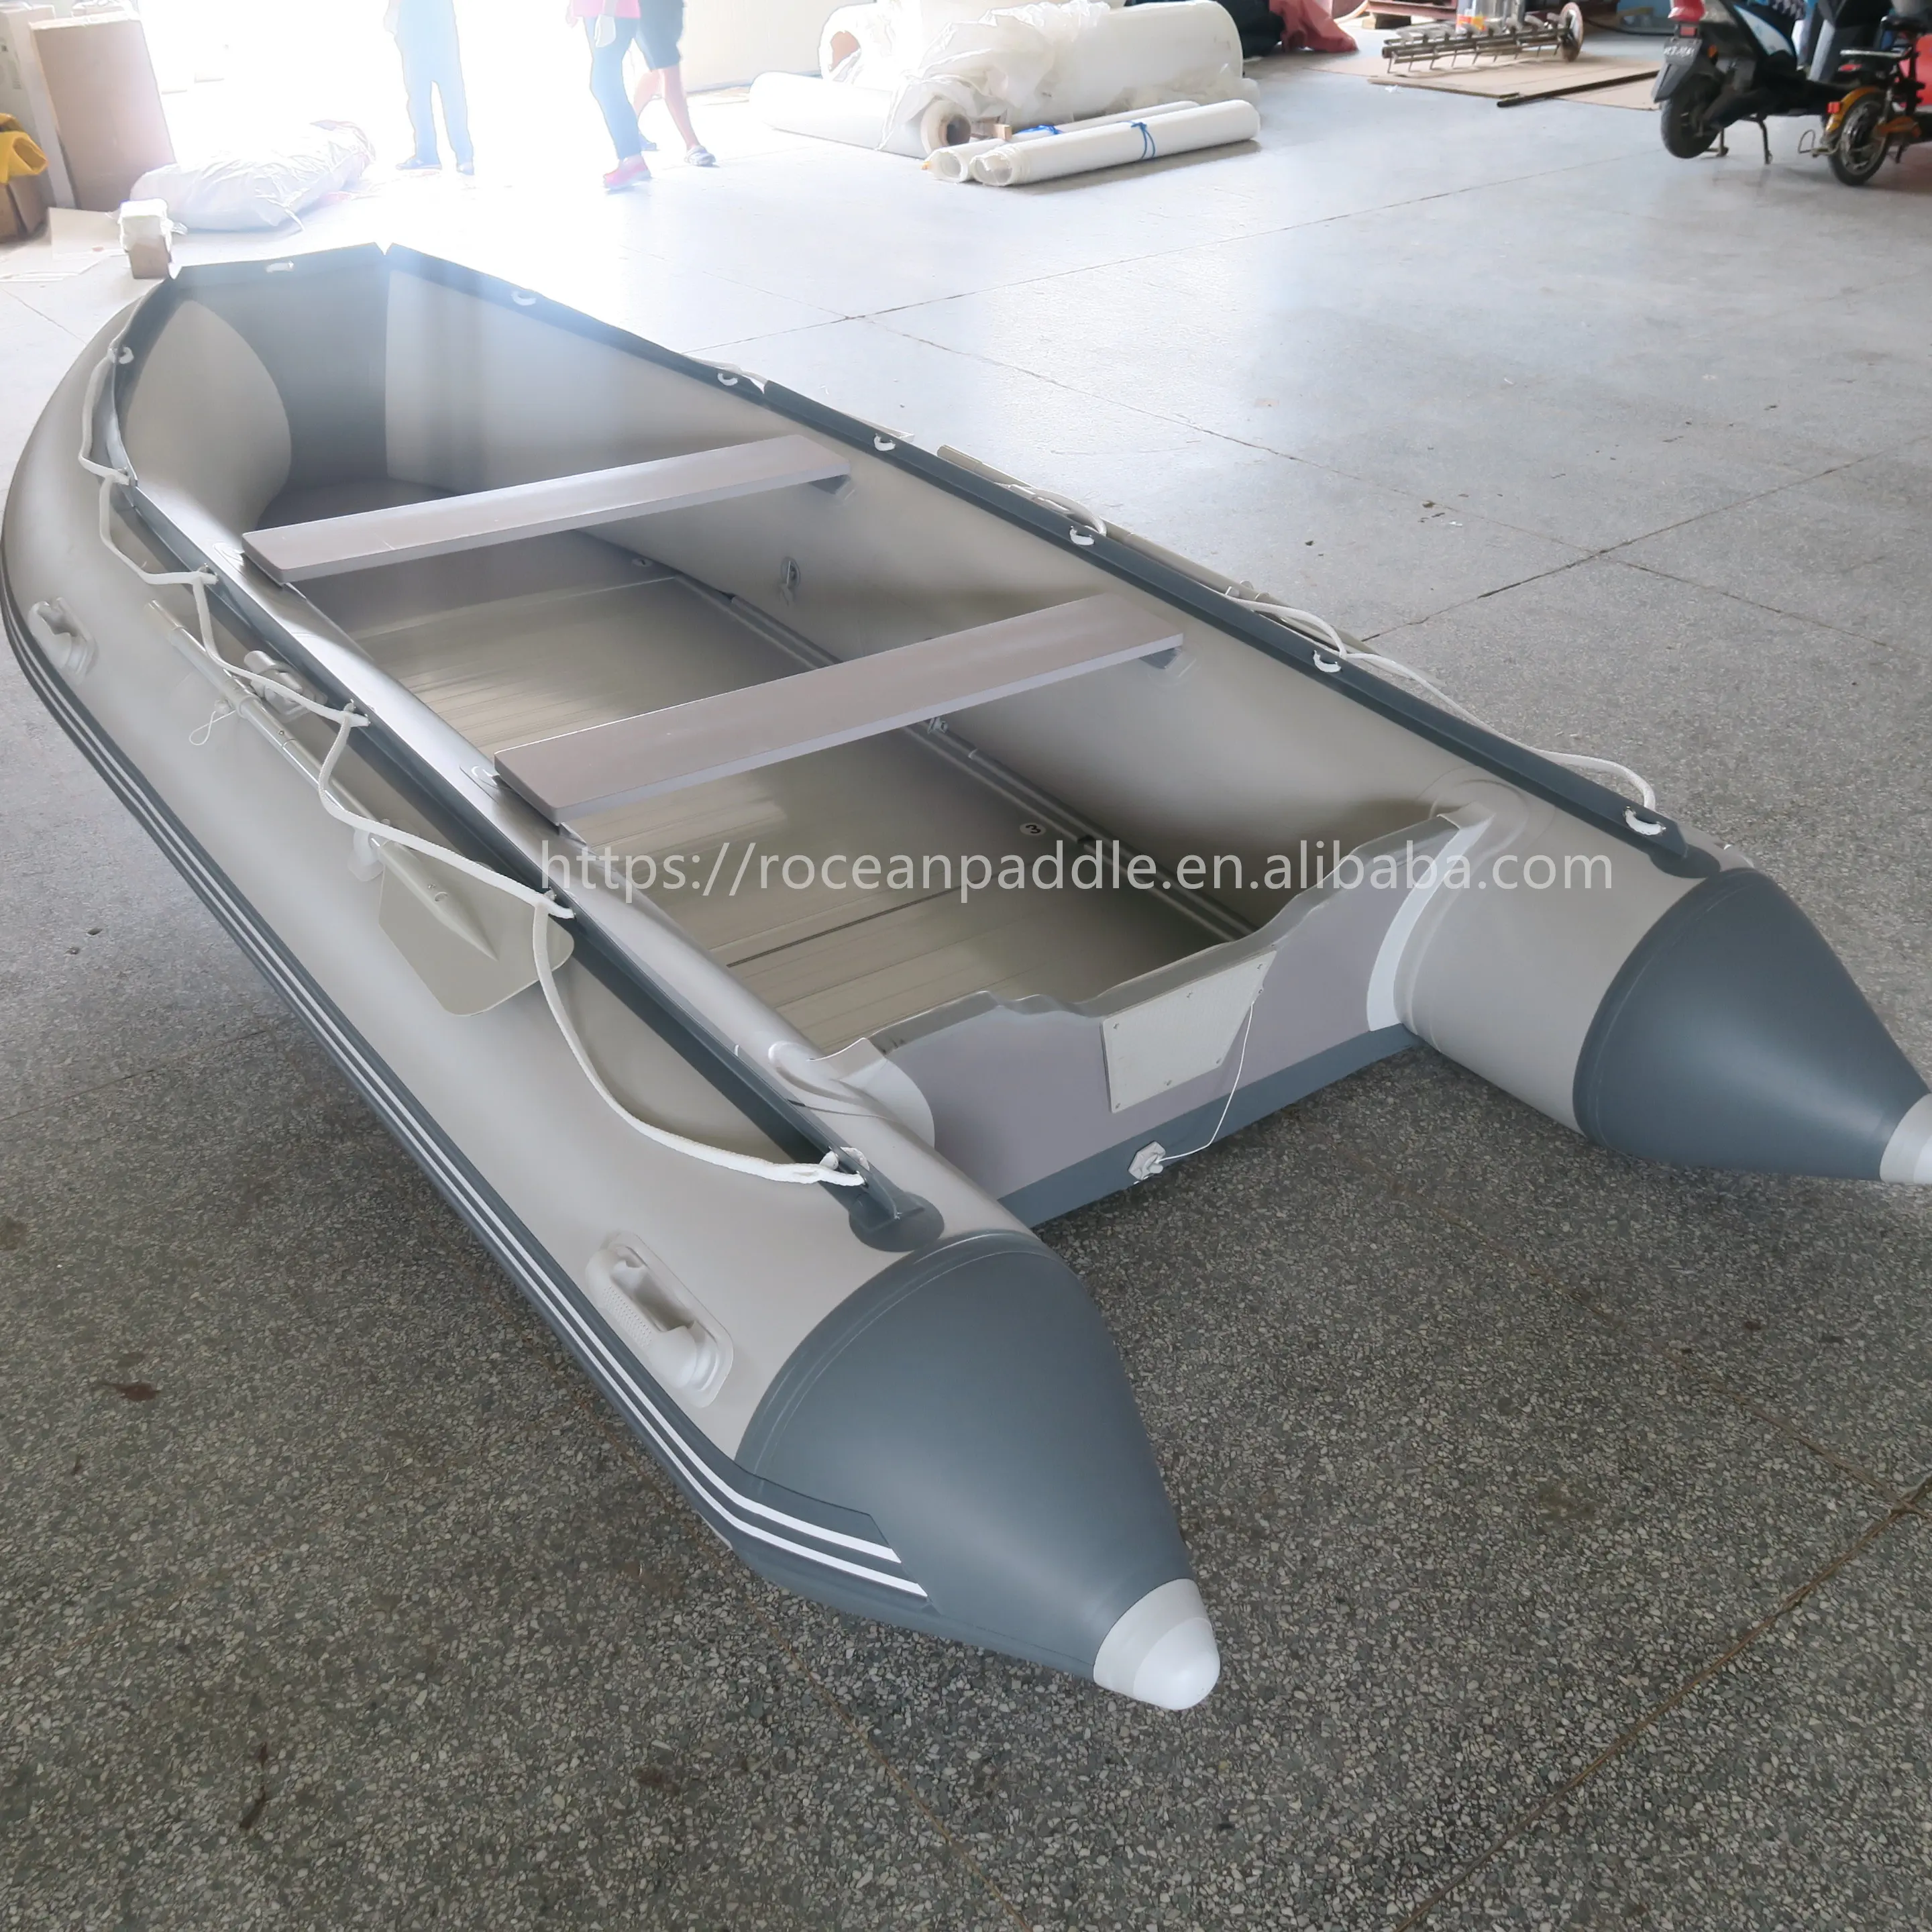 Venta caliente 10,8 pies 3,3 M bote inflable balsa inflable pesca tierno pontón barco para la venta